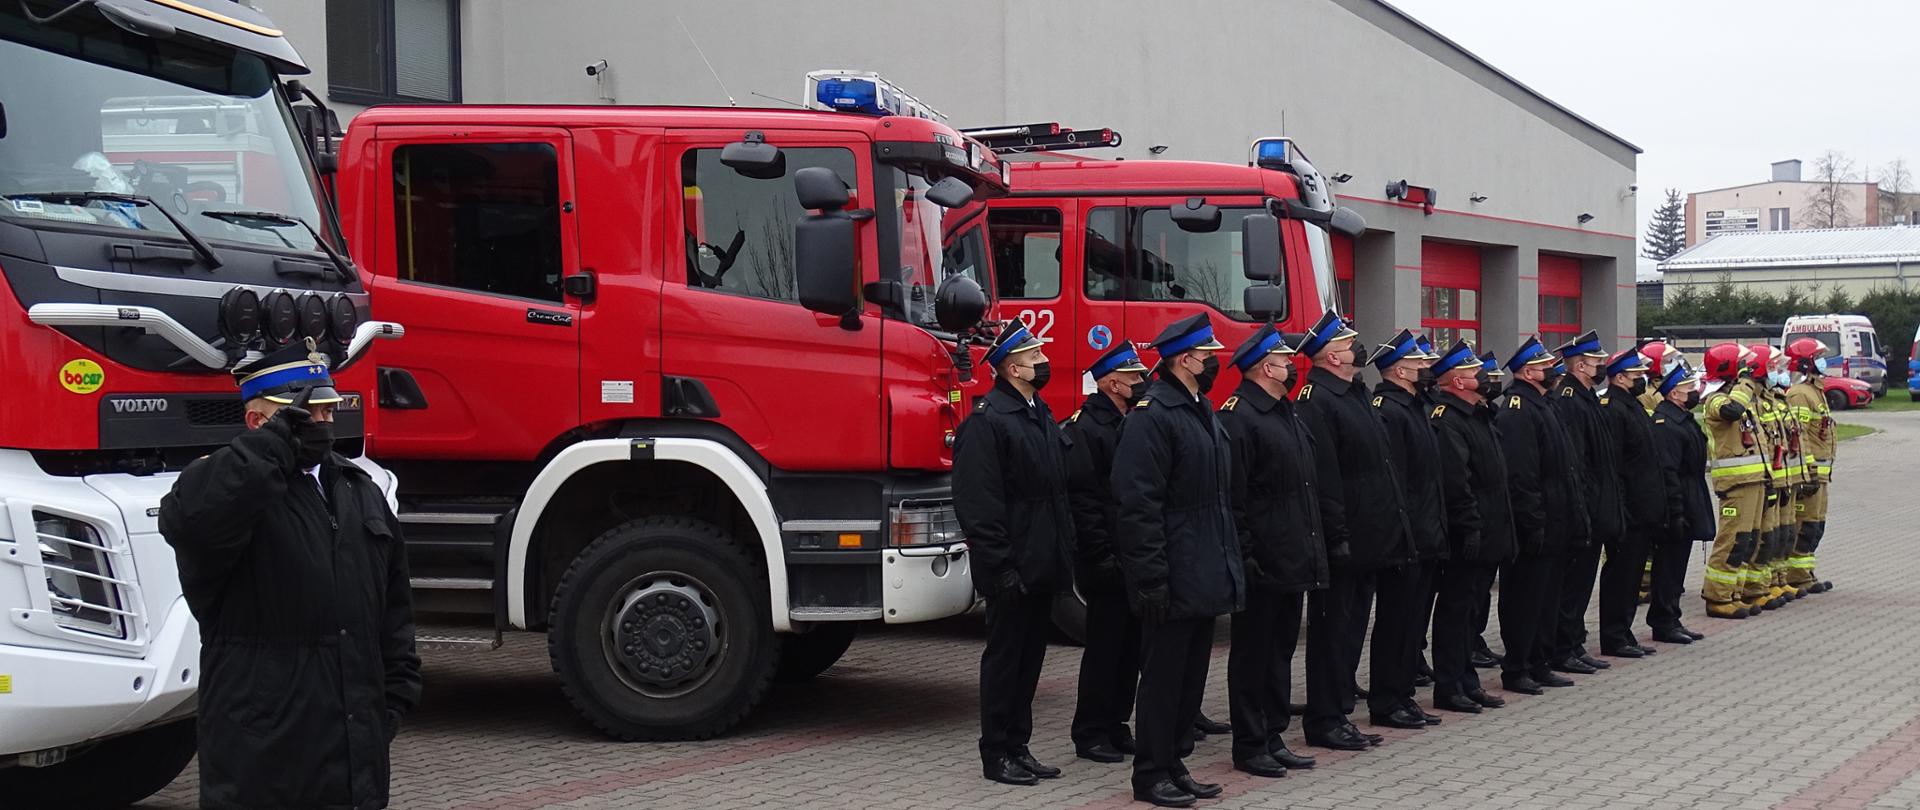 Na zdjęciu widać pododdziały bartoszyckich strażaków